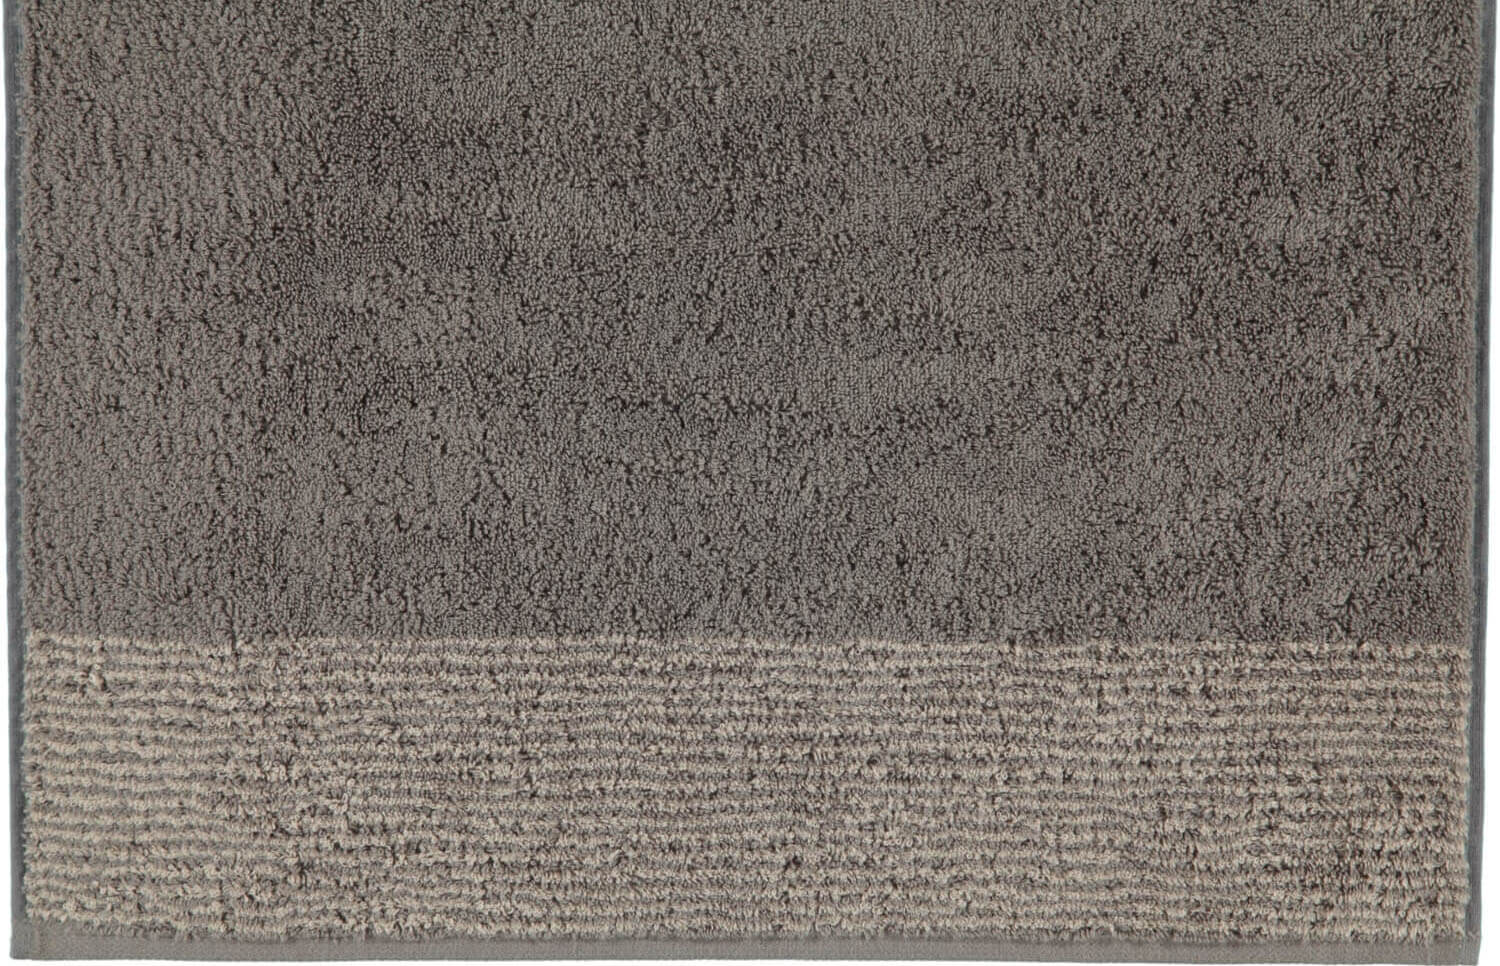 Полотенце Two-Tone Graphit Cawo Германия ☞ Размер: 80 x 150 см